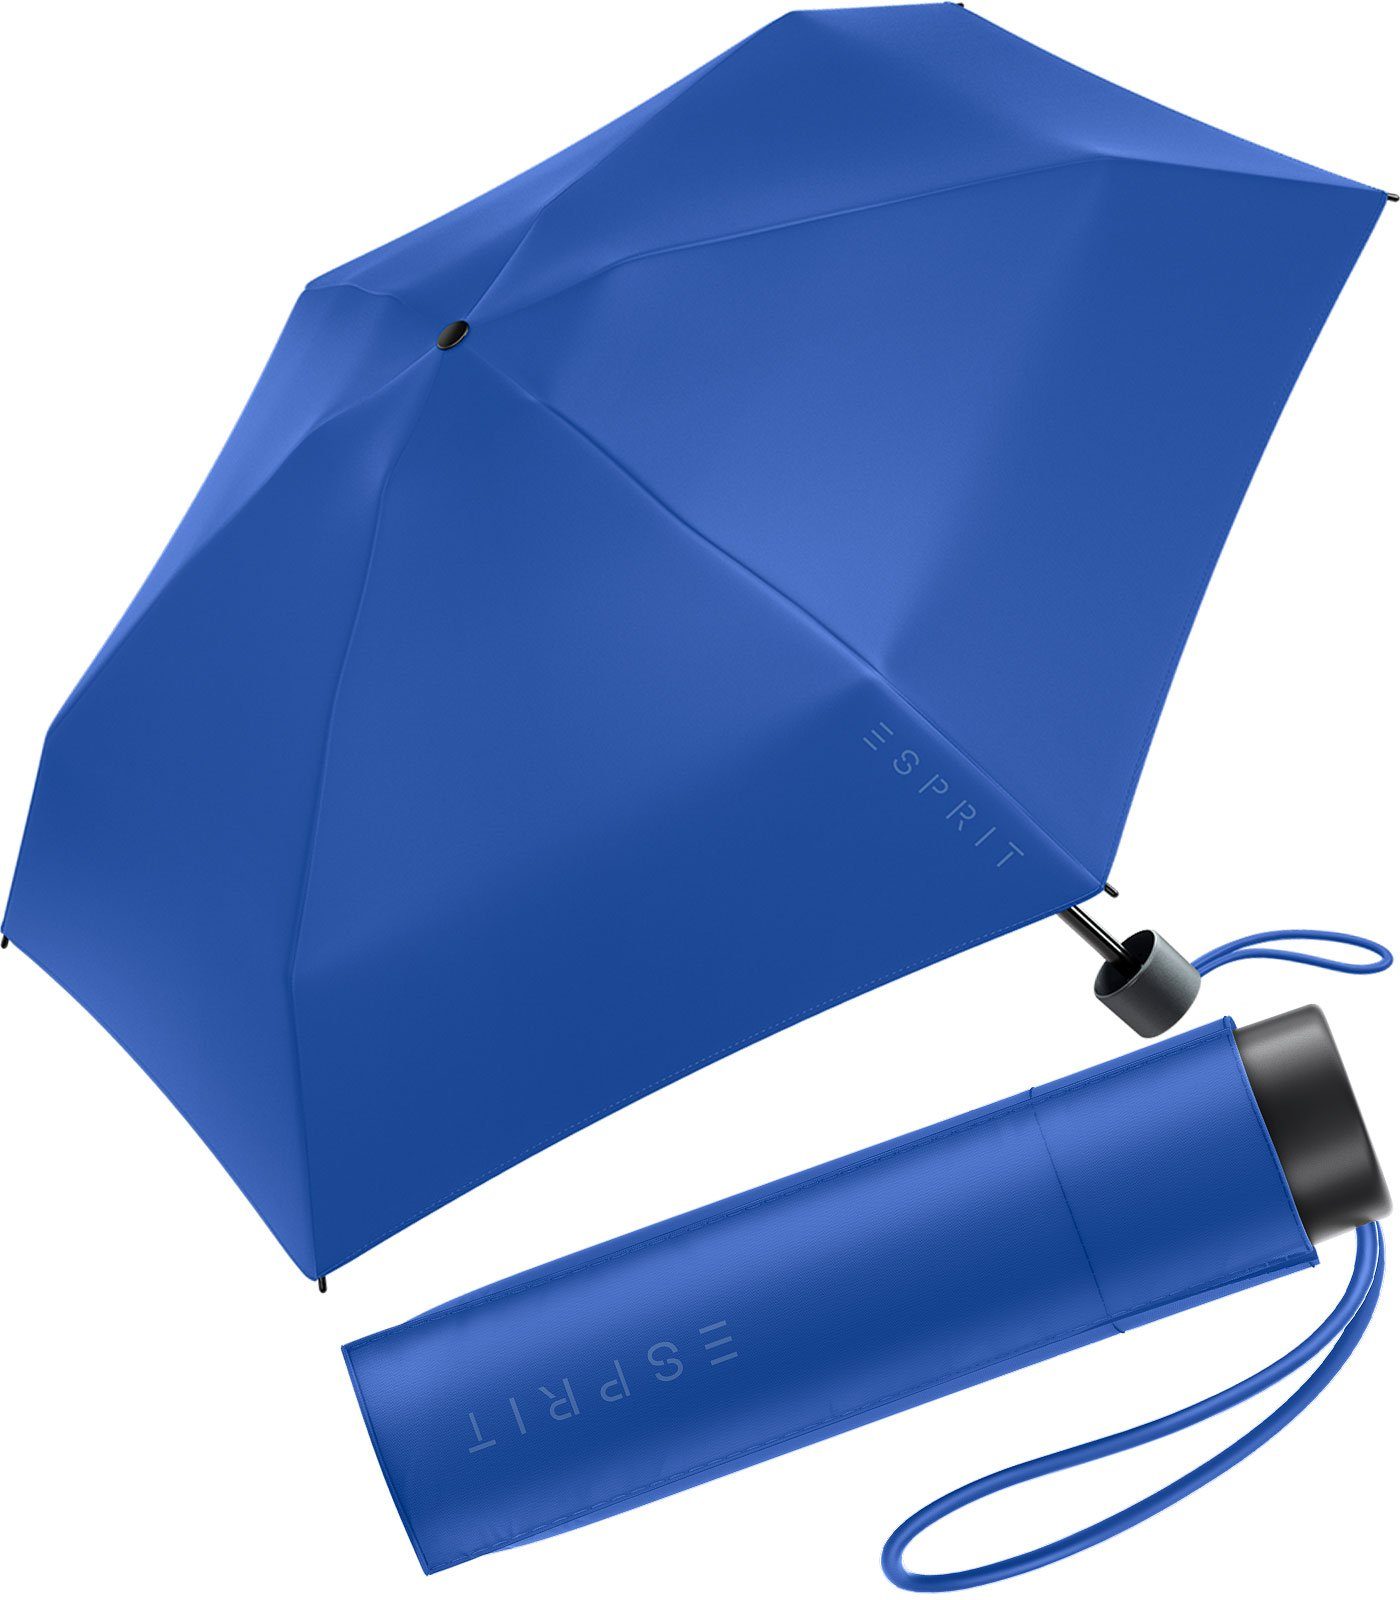 Esprit Langregenschirm Damen Super Mini Regenschirm Petito HW 2023, in den neuen Trendfarben, beaucoup blue blau